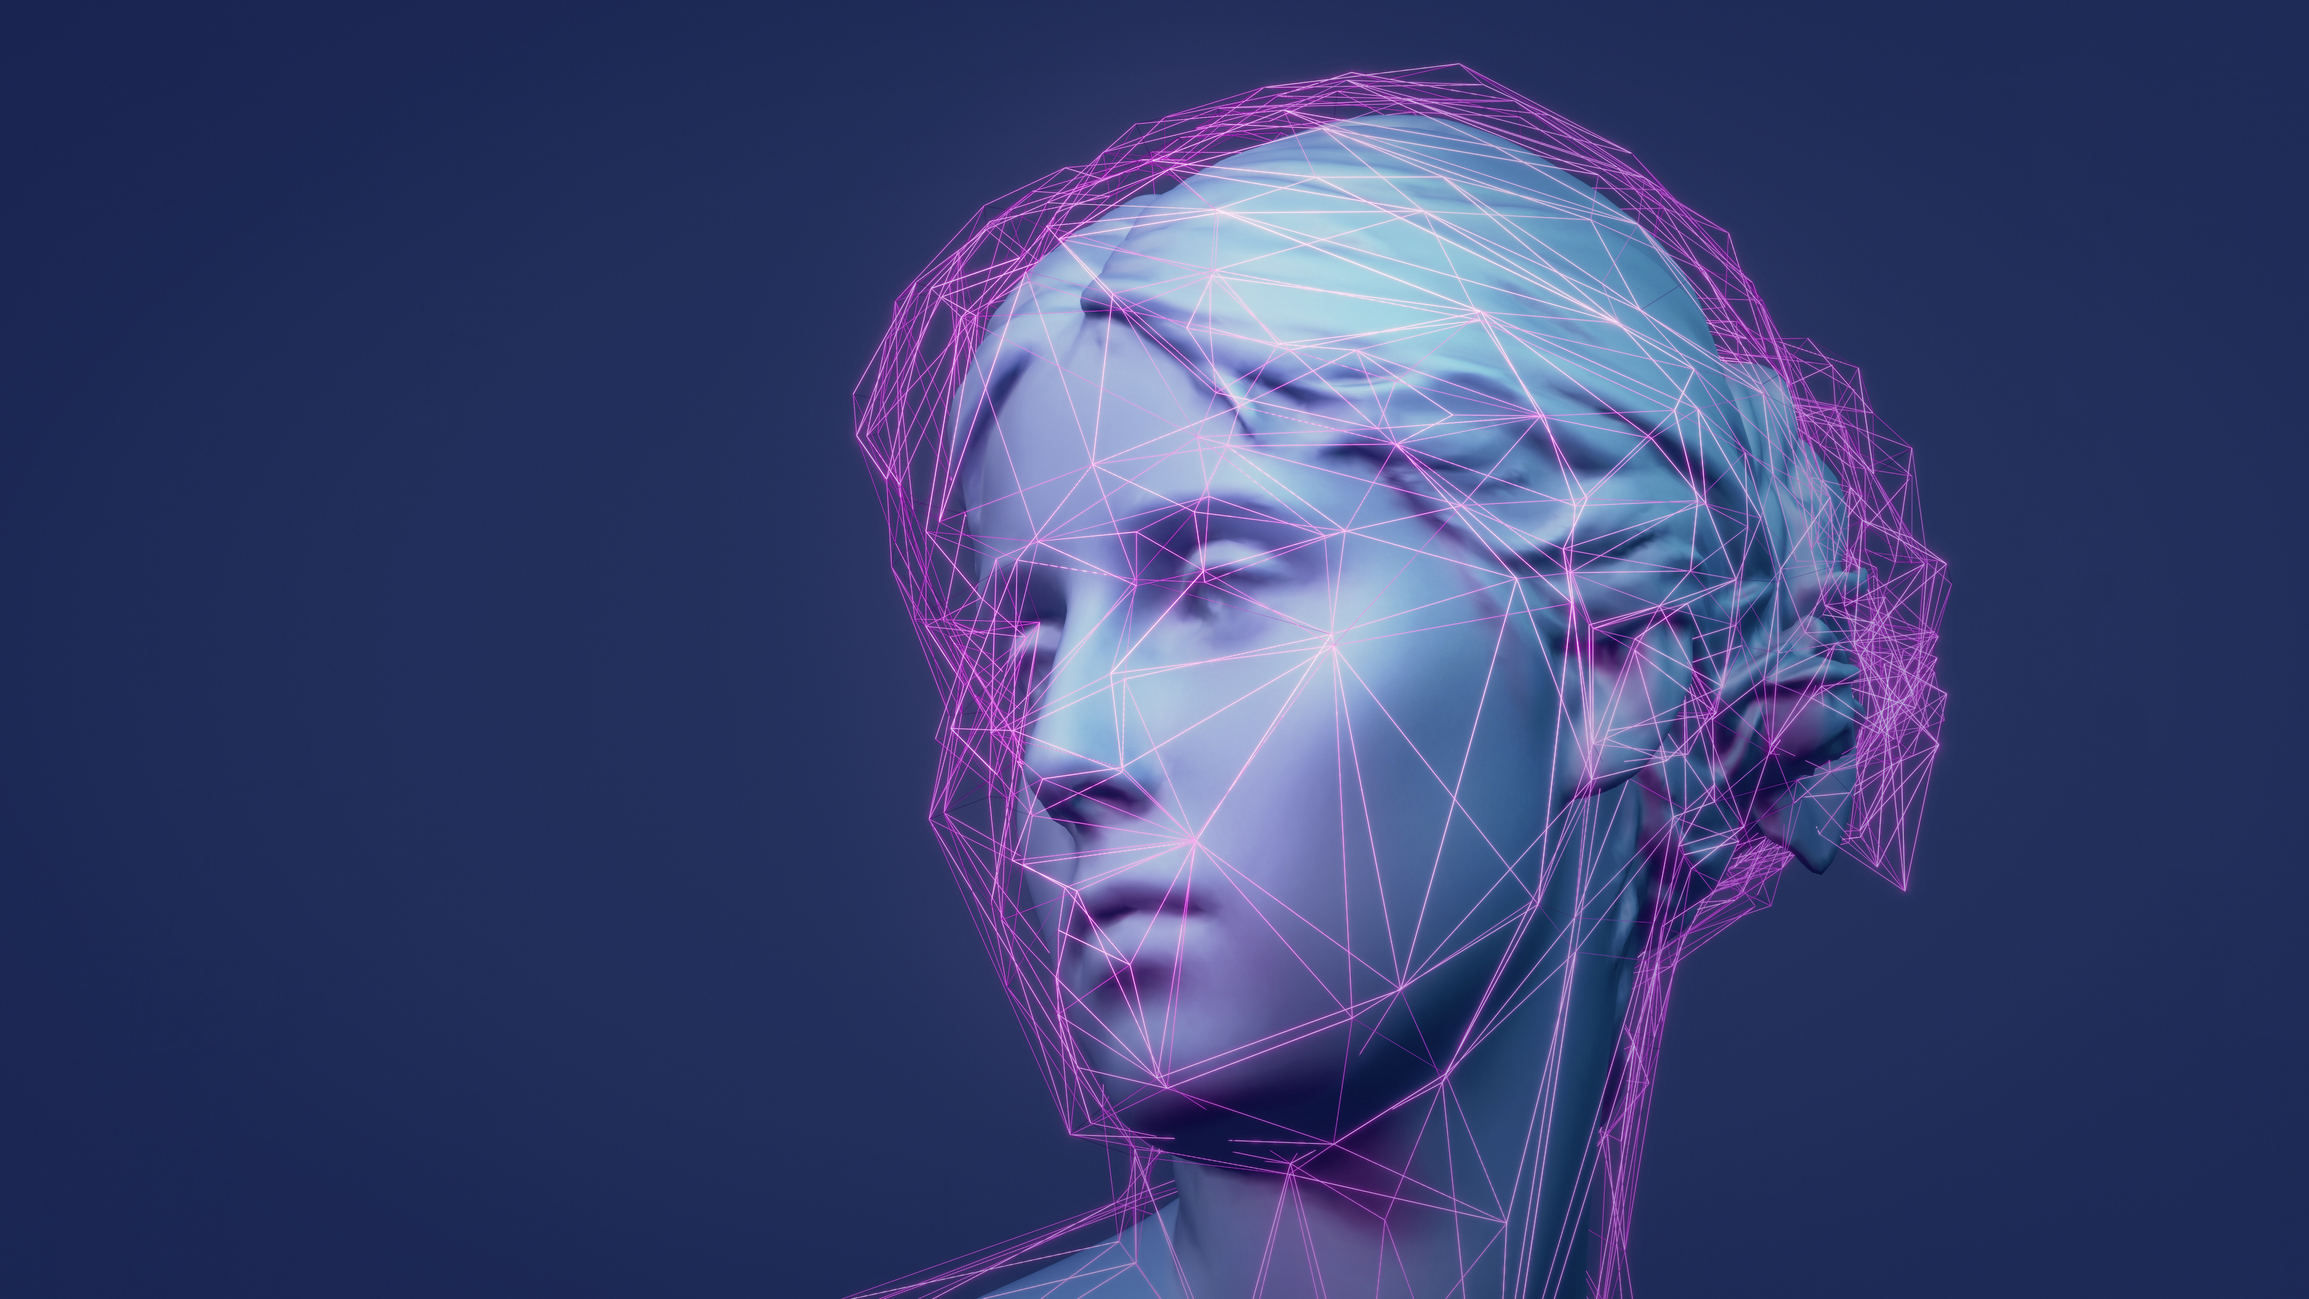 Classic Avatar Metaverse Escultura renderizada en 3D con red de línea púrpura brillante de baja poli.  Concepto de aprendizaje automático e inteligencia artificial.  Ejemplo de ilustración NFT animada en 3D.  Fondo de tecnología web 3.0.